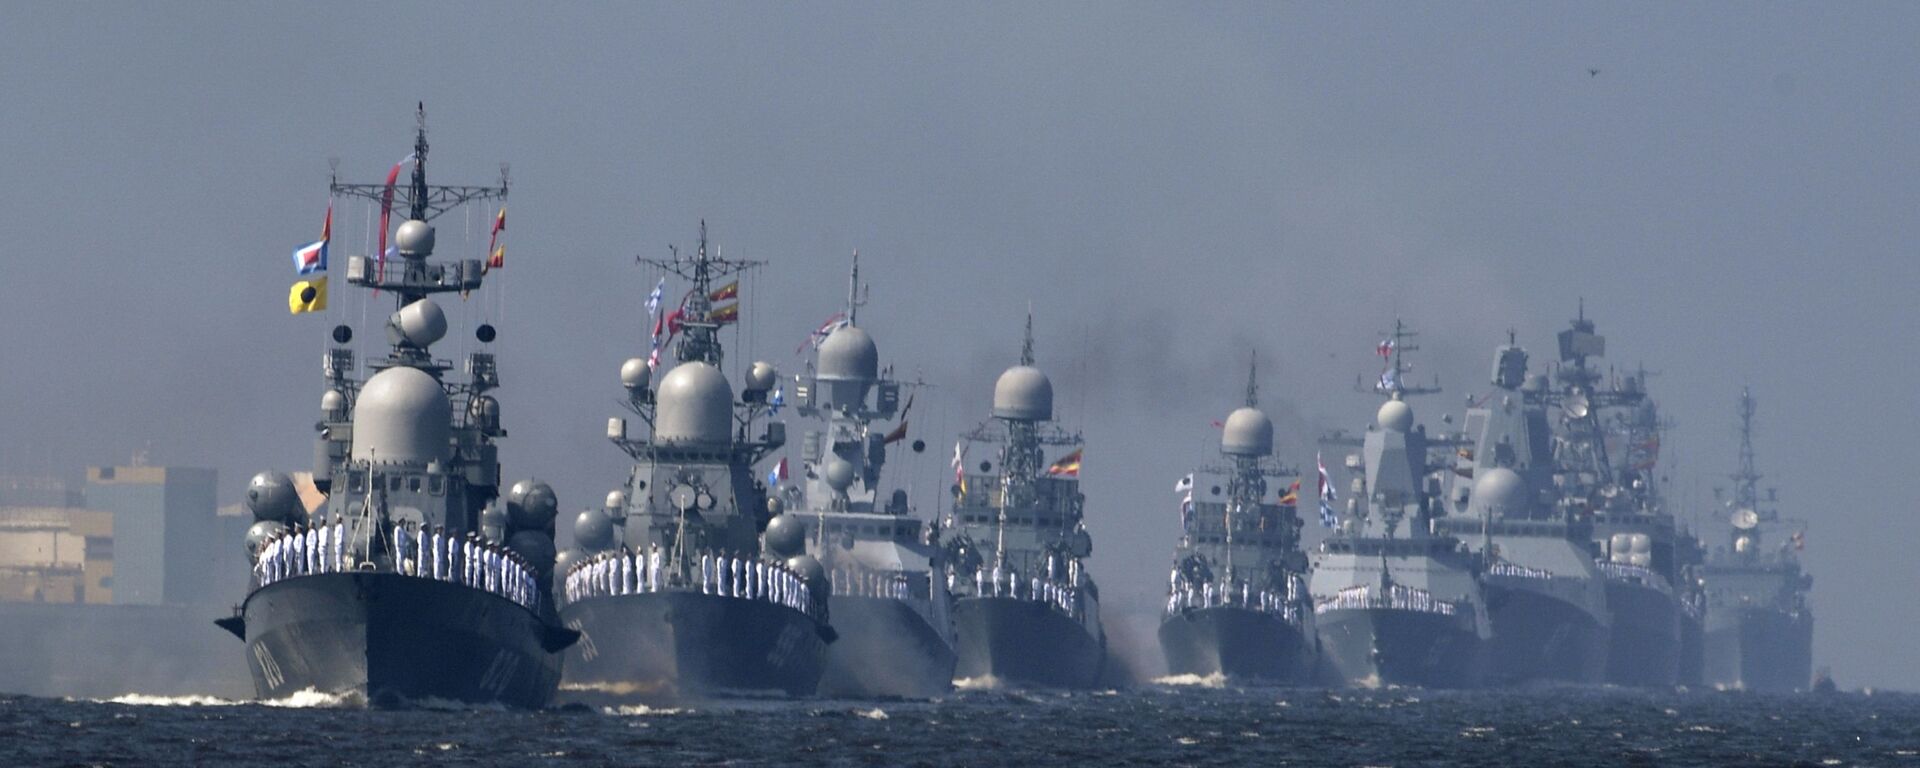 Tàu của Hải quân Nga tại buổi diễn tập diễu hành vinh danh Ngày Hải quân ở Kronstadt - Sputnik Việt Nam, 1920, 08.04.2021